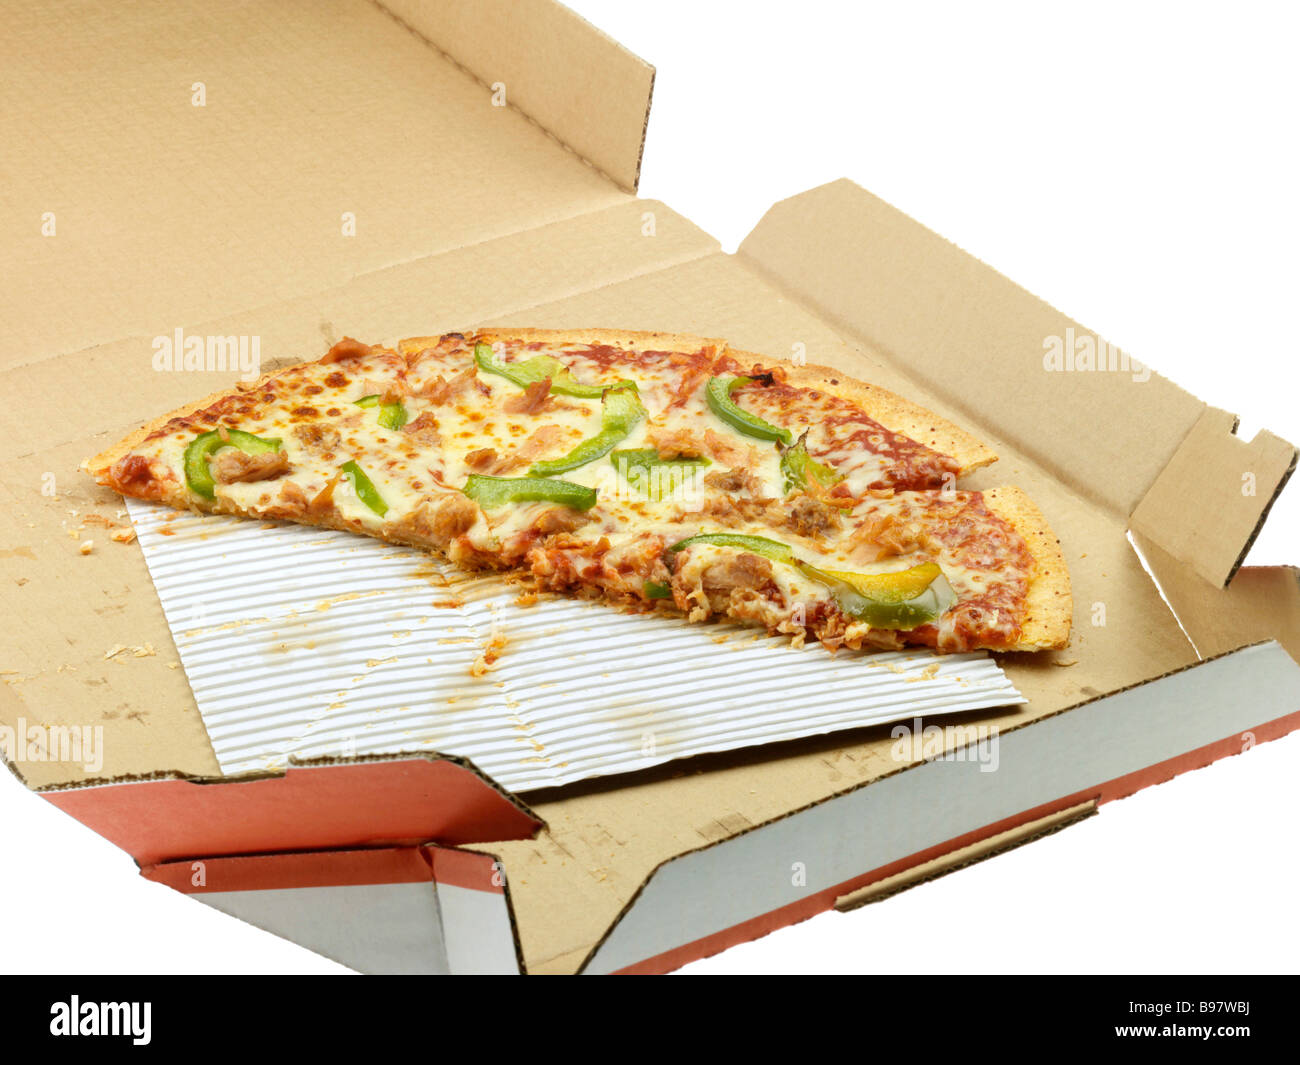 Marke Dominos Takeaway Home Delivery Pizza Kartons oder Box Isoliert gegen einen weißen Hintergrund mit keine Menschen und einen Freistellungspfad Stockfoto